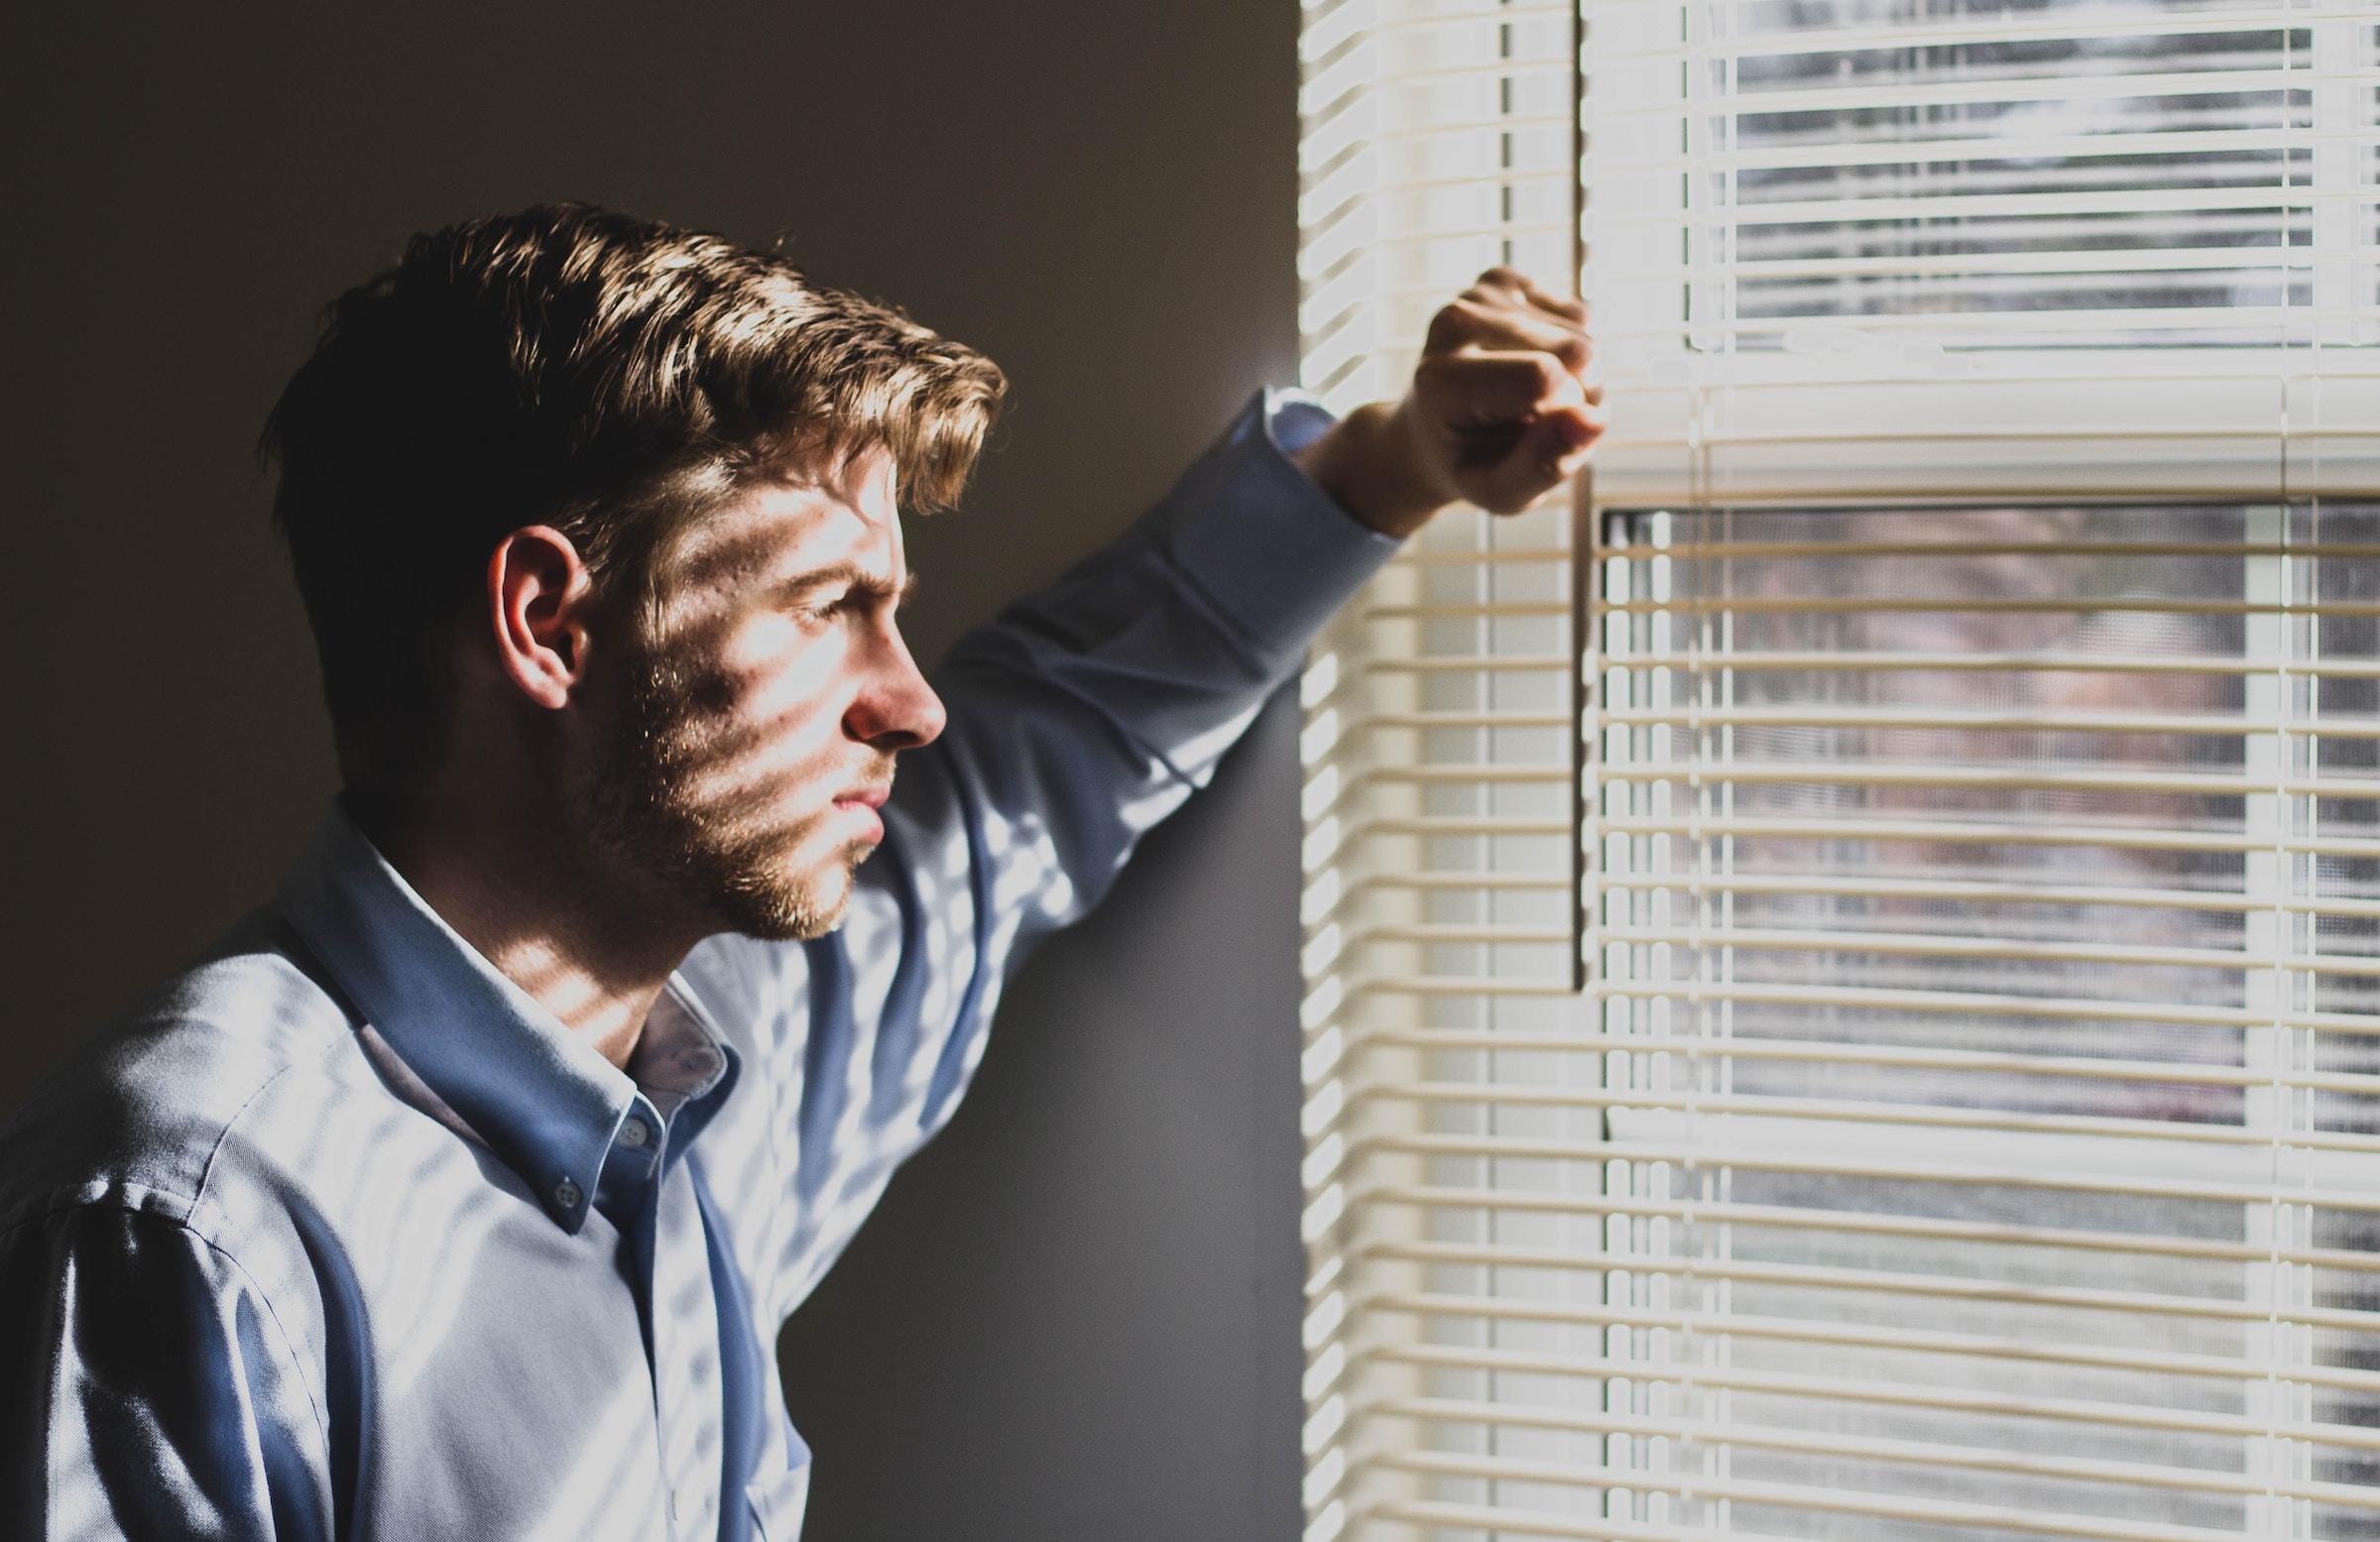 Un hombre mirando al exterior a través de las persianas de la ventana | Fuente: Unsplash